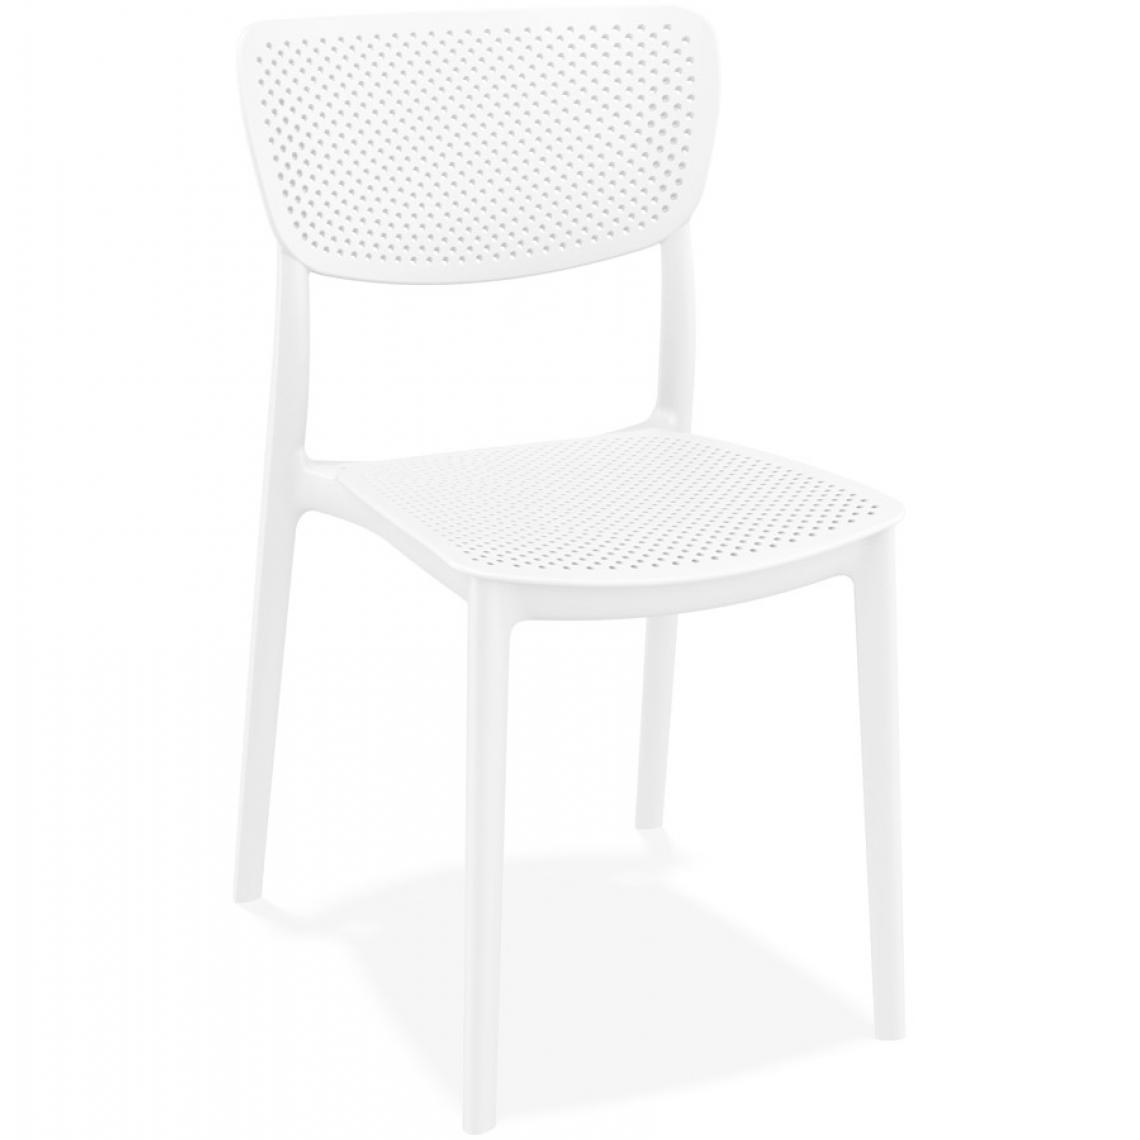 Alterego - Chaise de terrasse perforée 'PALMA' en matière plastique blanche - Chaises